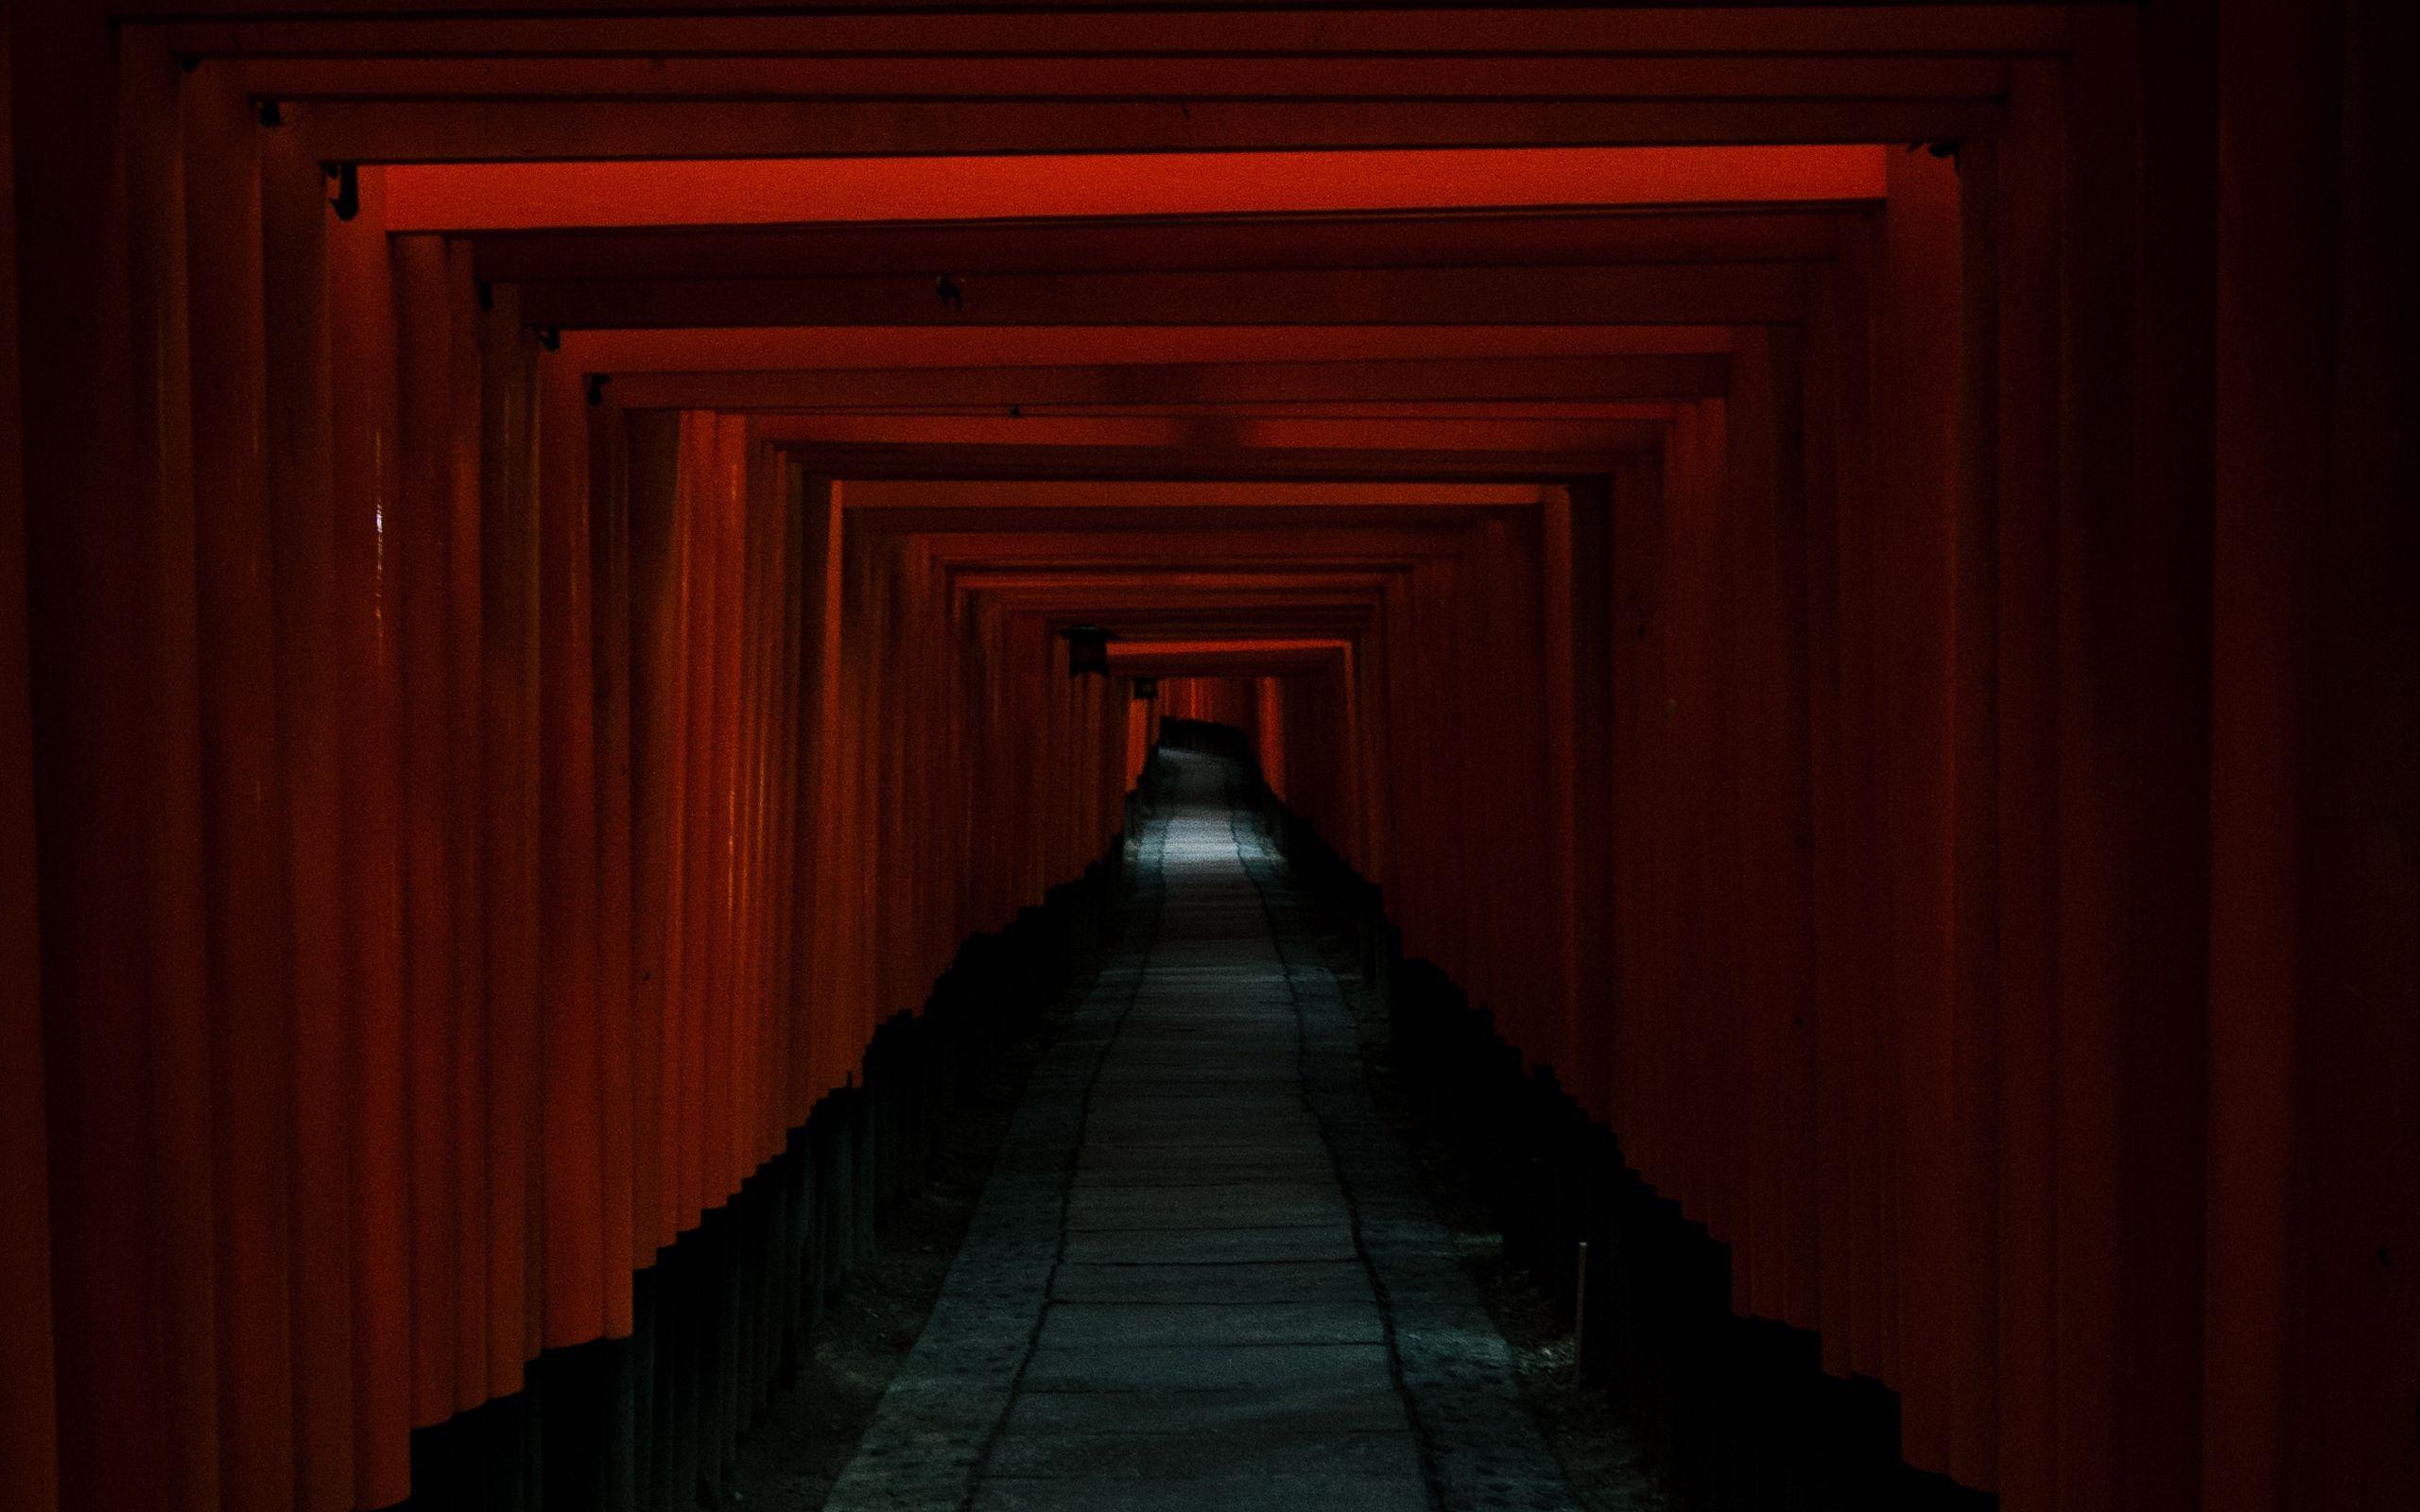 Download wallpaper 2560x1600 tunnel, passage, dark, red